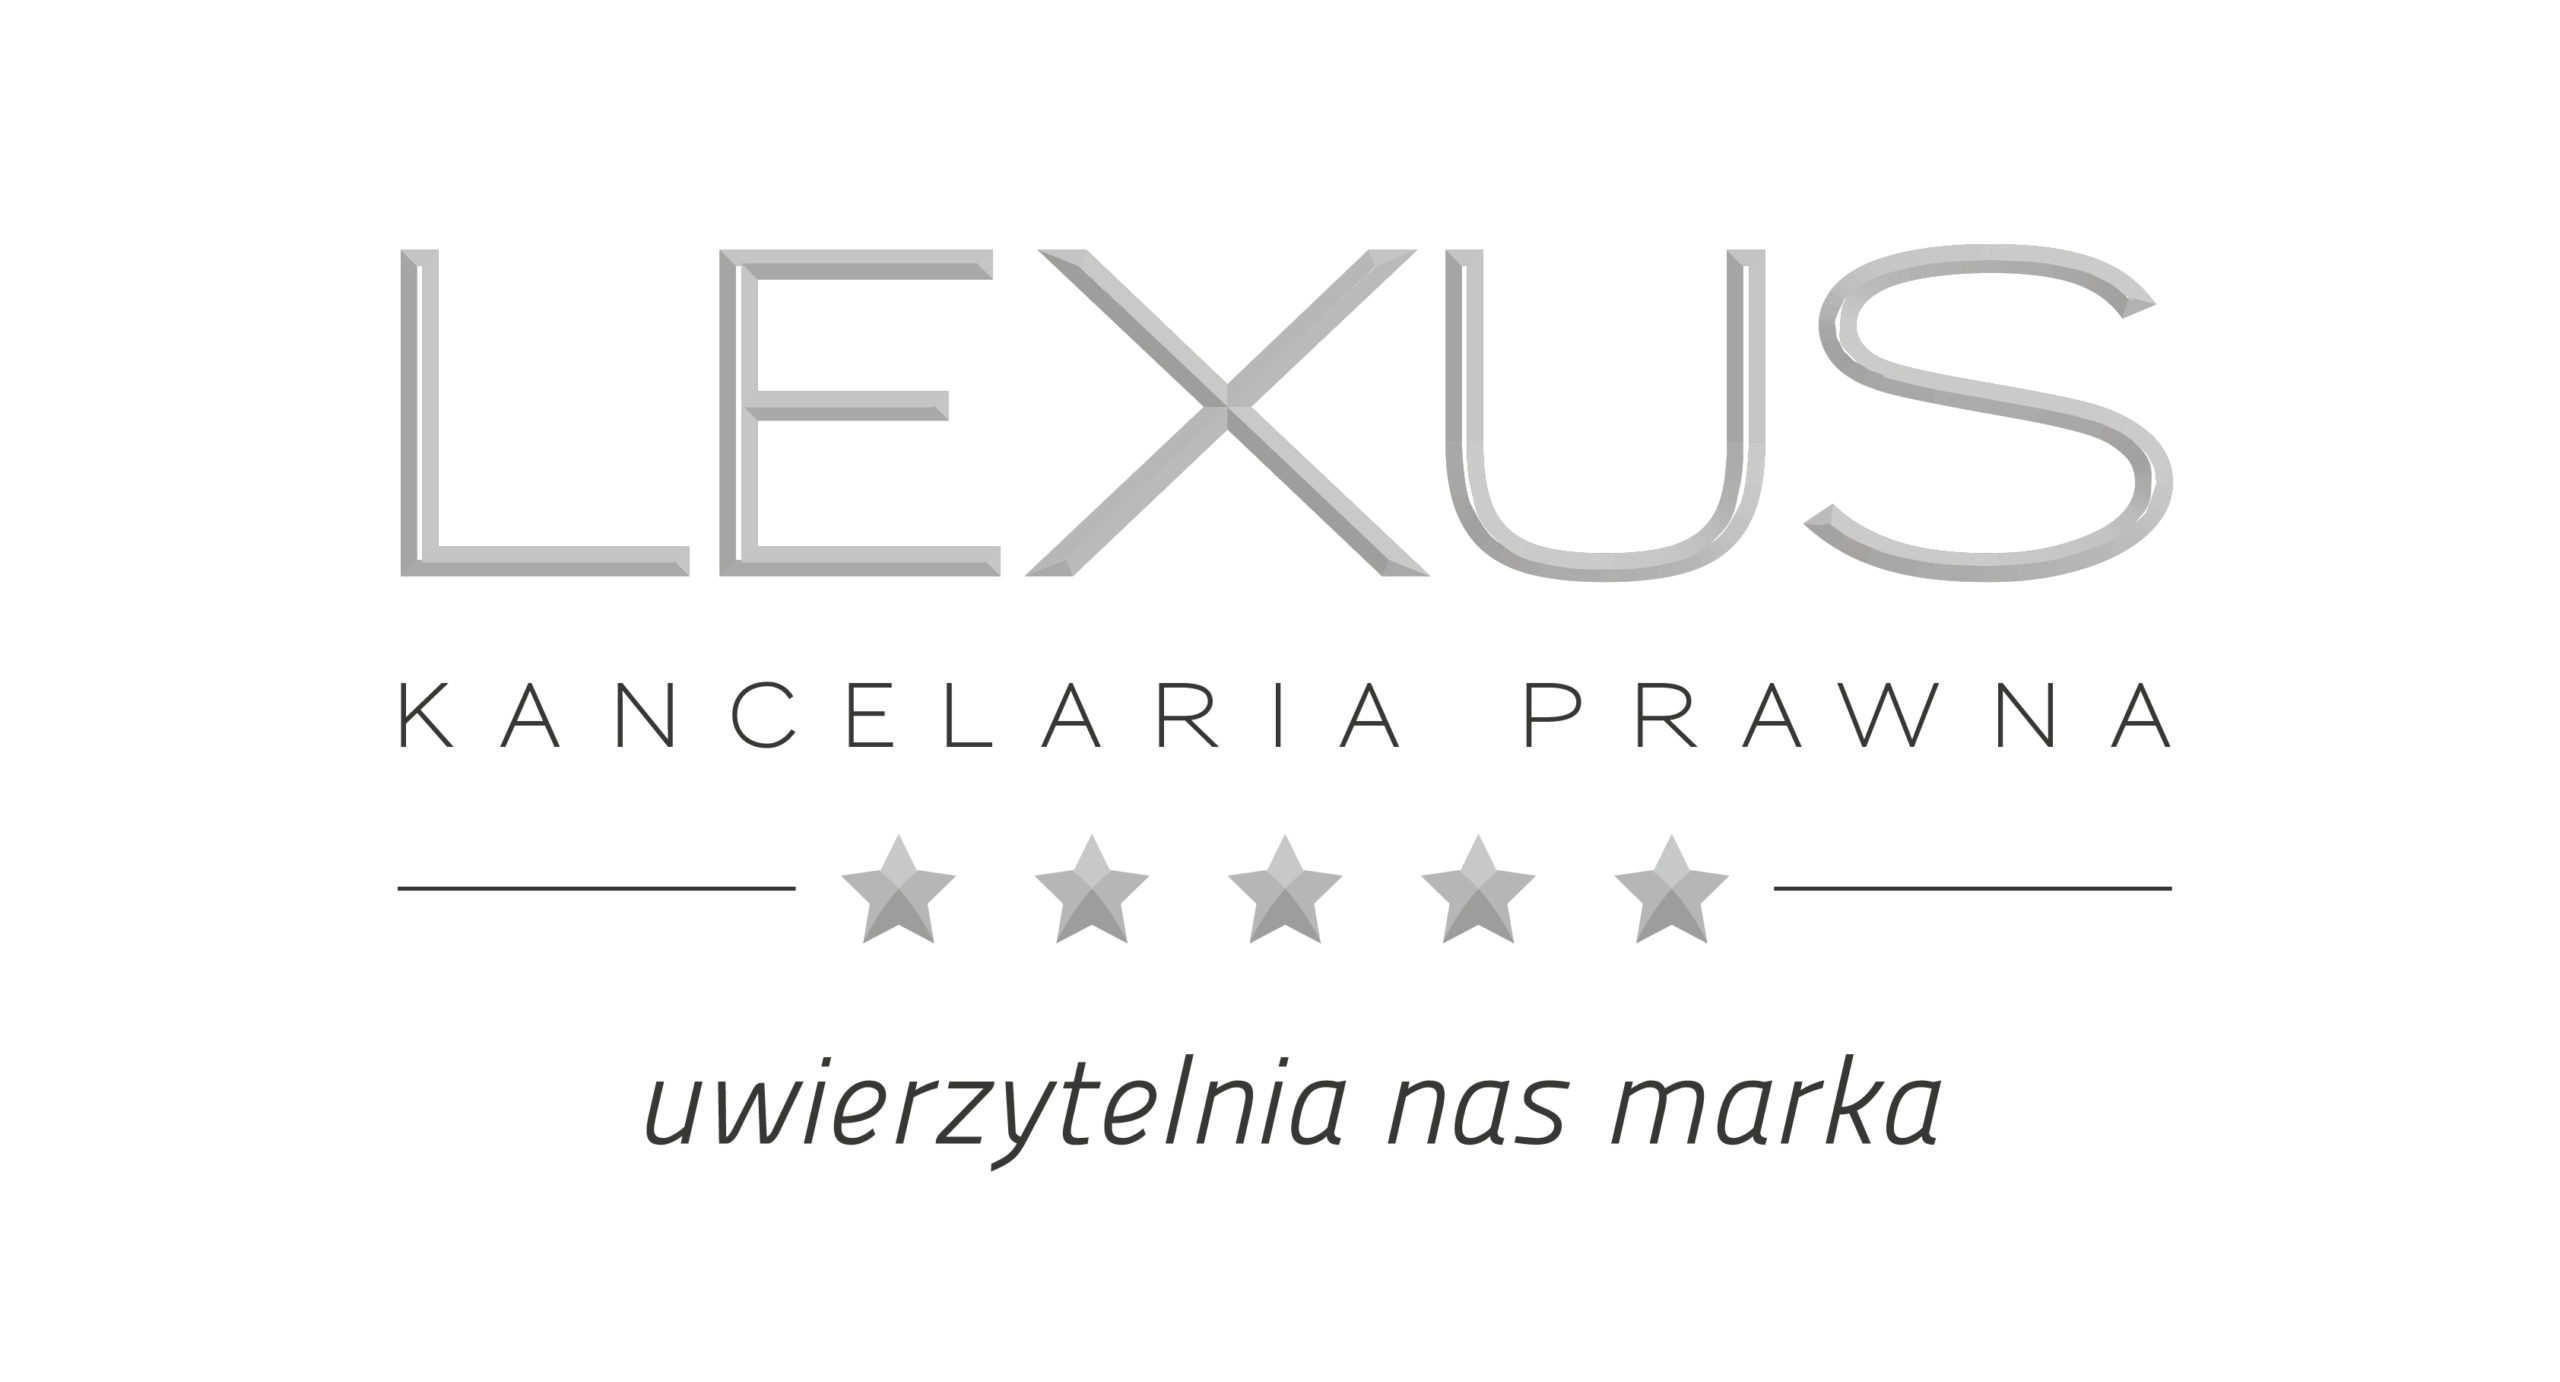 Kancelaria Prawna "Lexus" Sprawdź nasze usługi